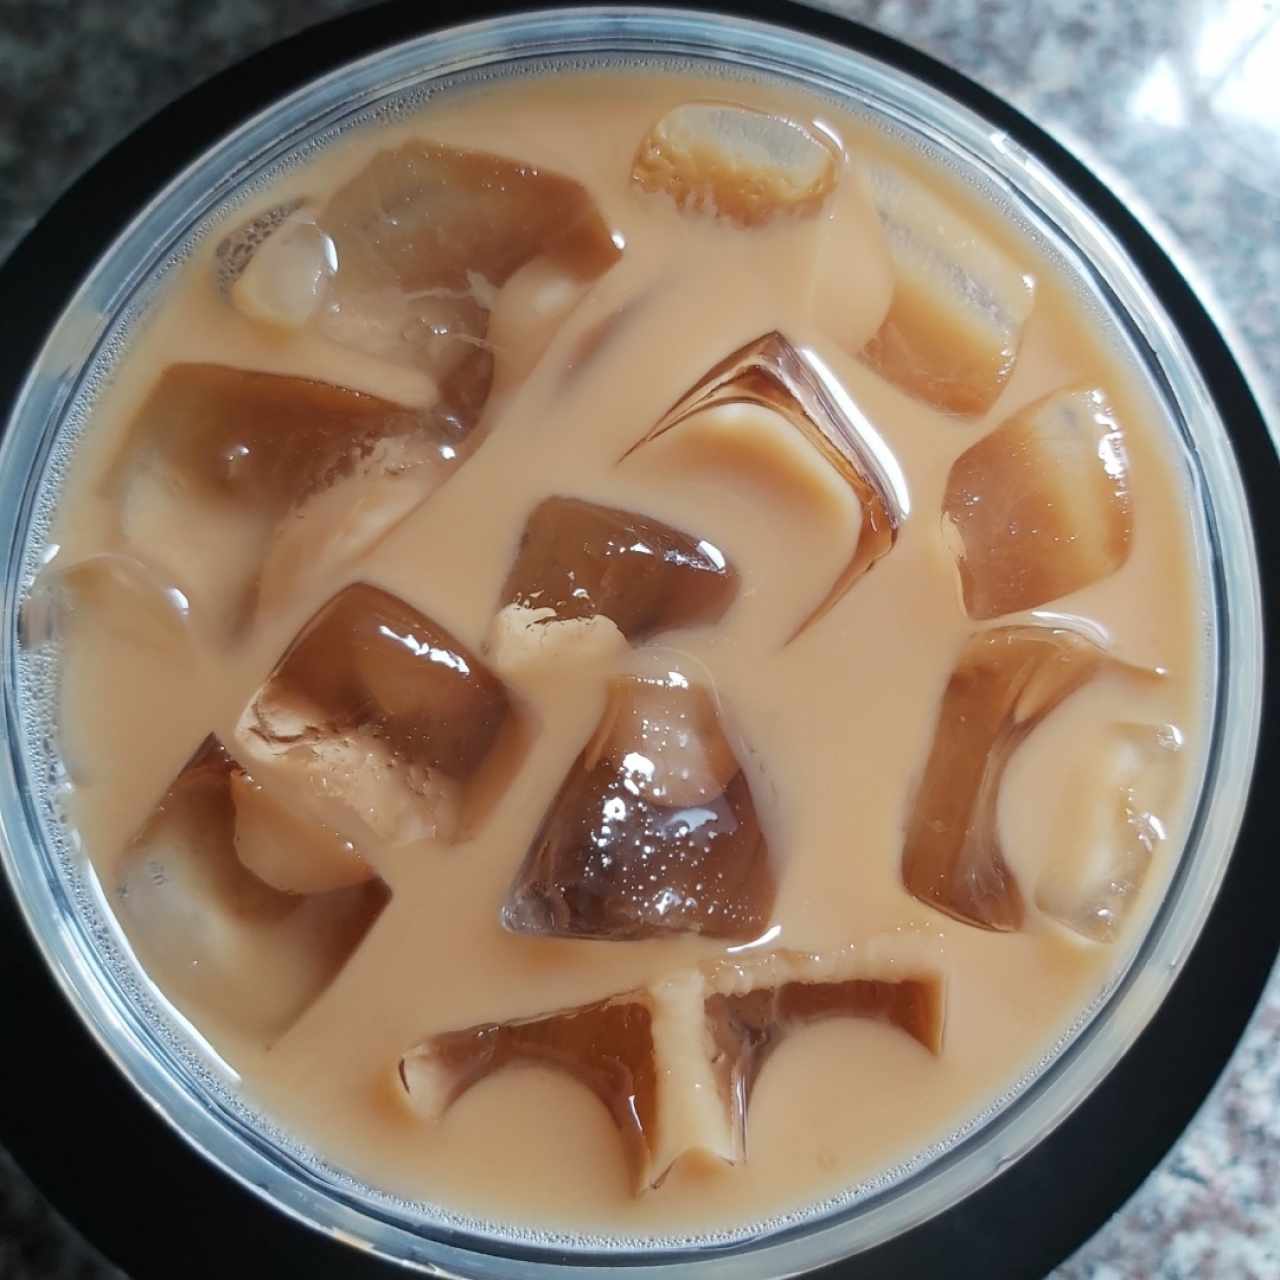 Cold brew latte